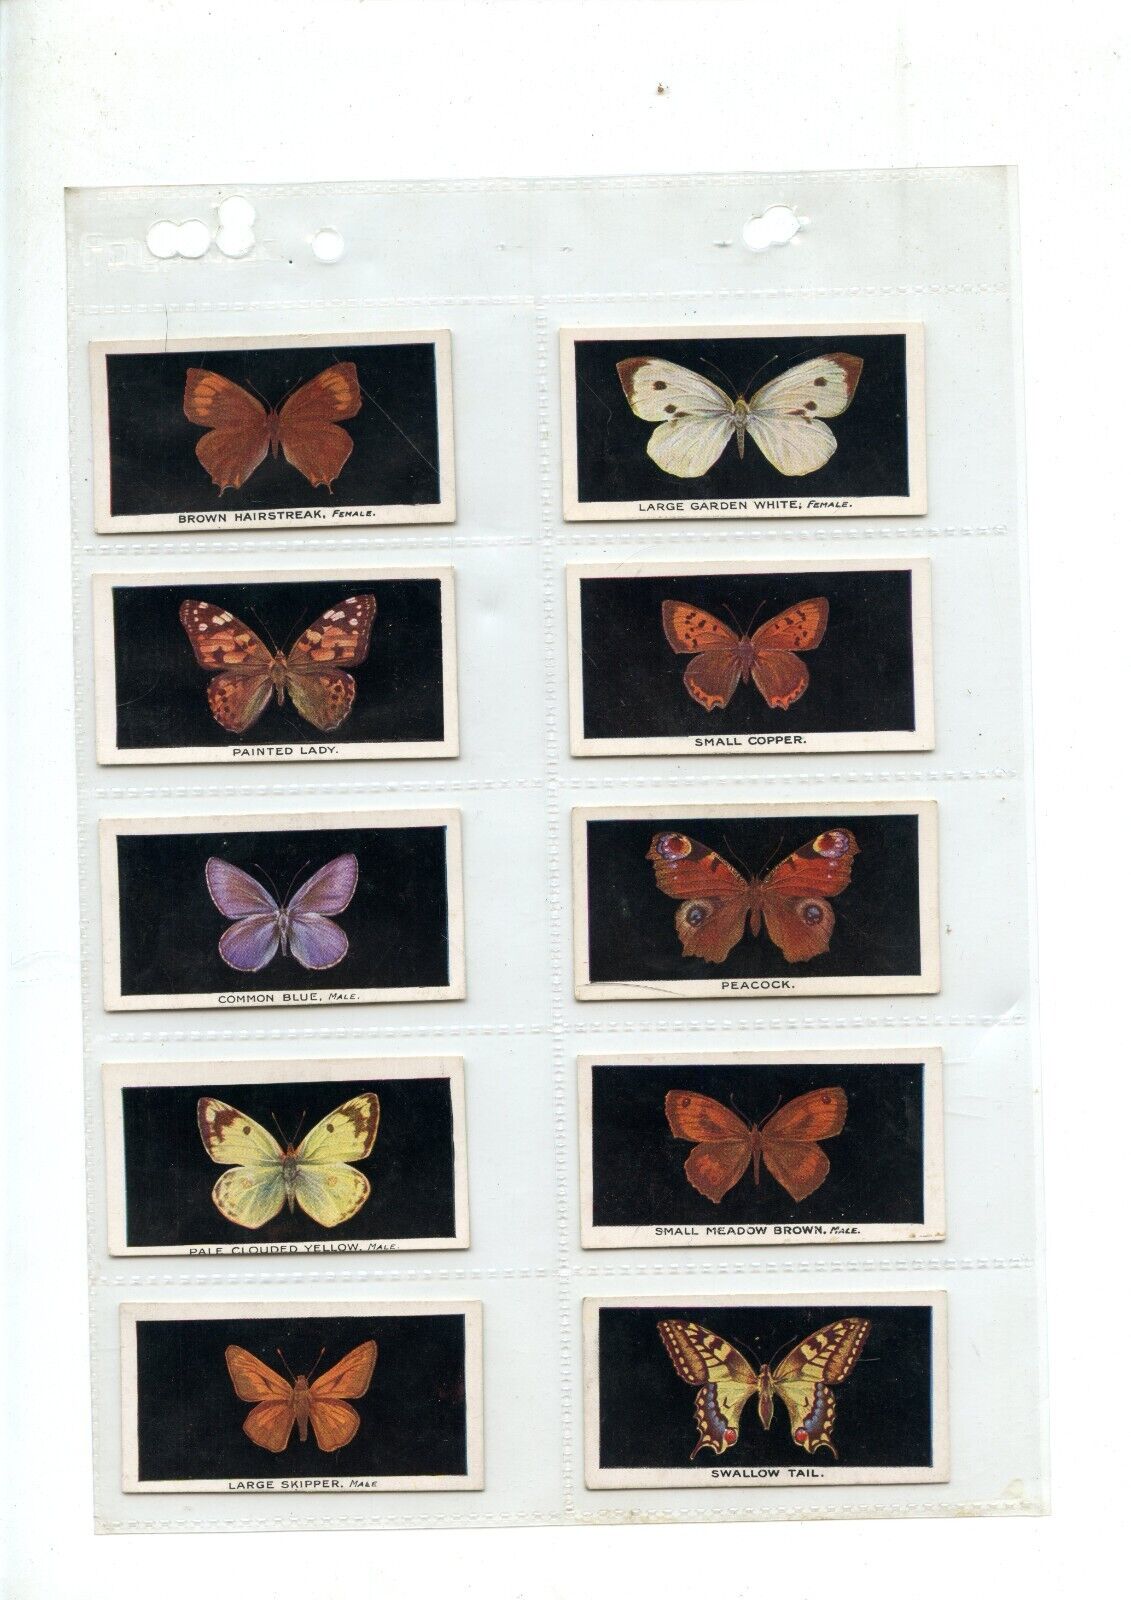 1935 Abdulla - British Butterflies COMPLETE CARD SET (25/25) VG-EX (140040)